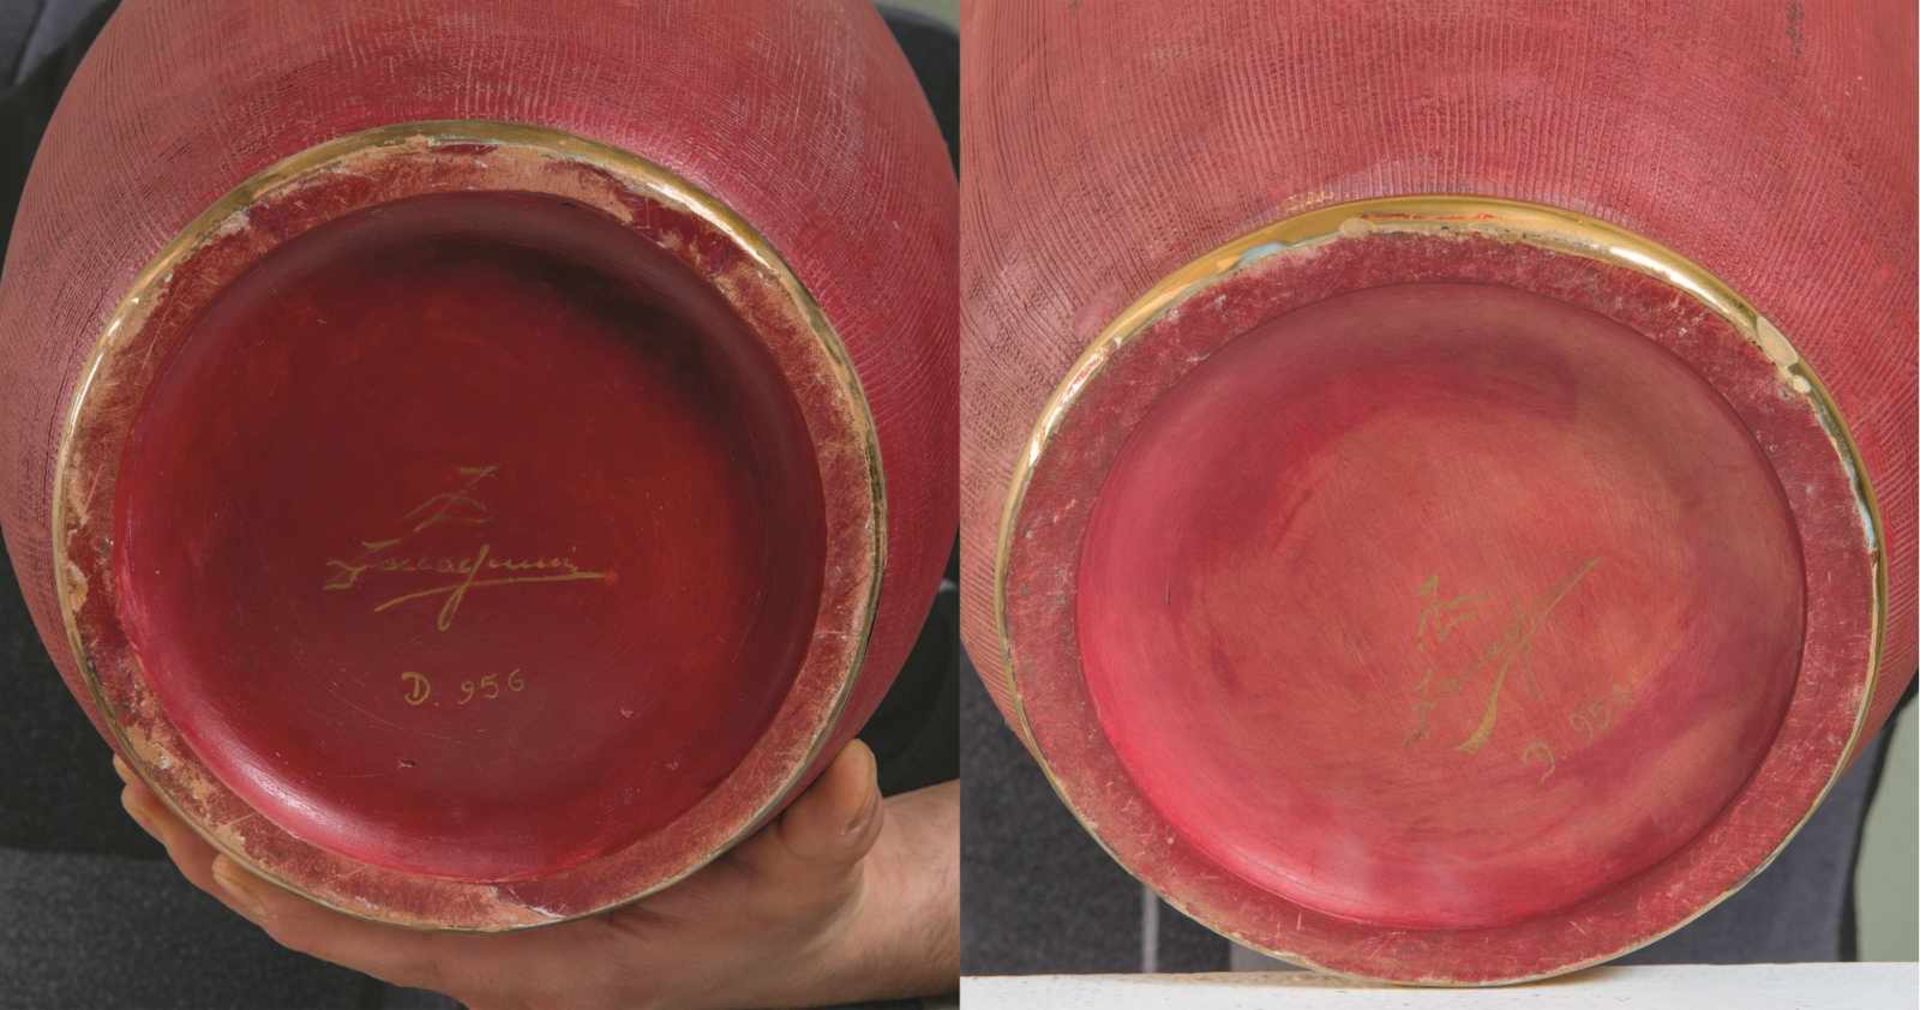 ZACCAGNINI, XX secolo. Coppia di vasi in ceramica policroma raffiguranti velieri. Cm 52, diametro: - Bild 3 aus 3